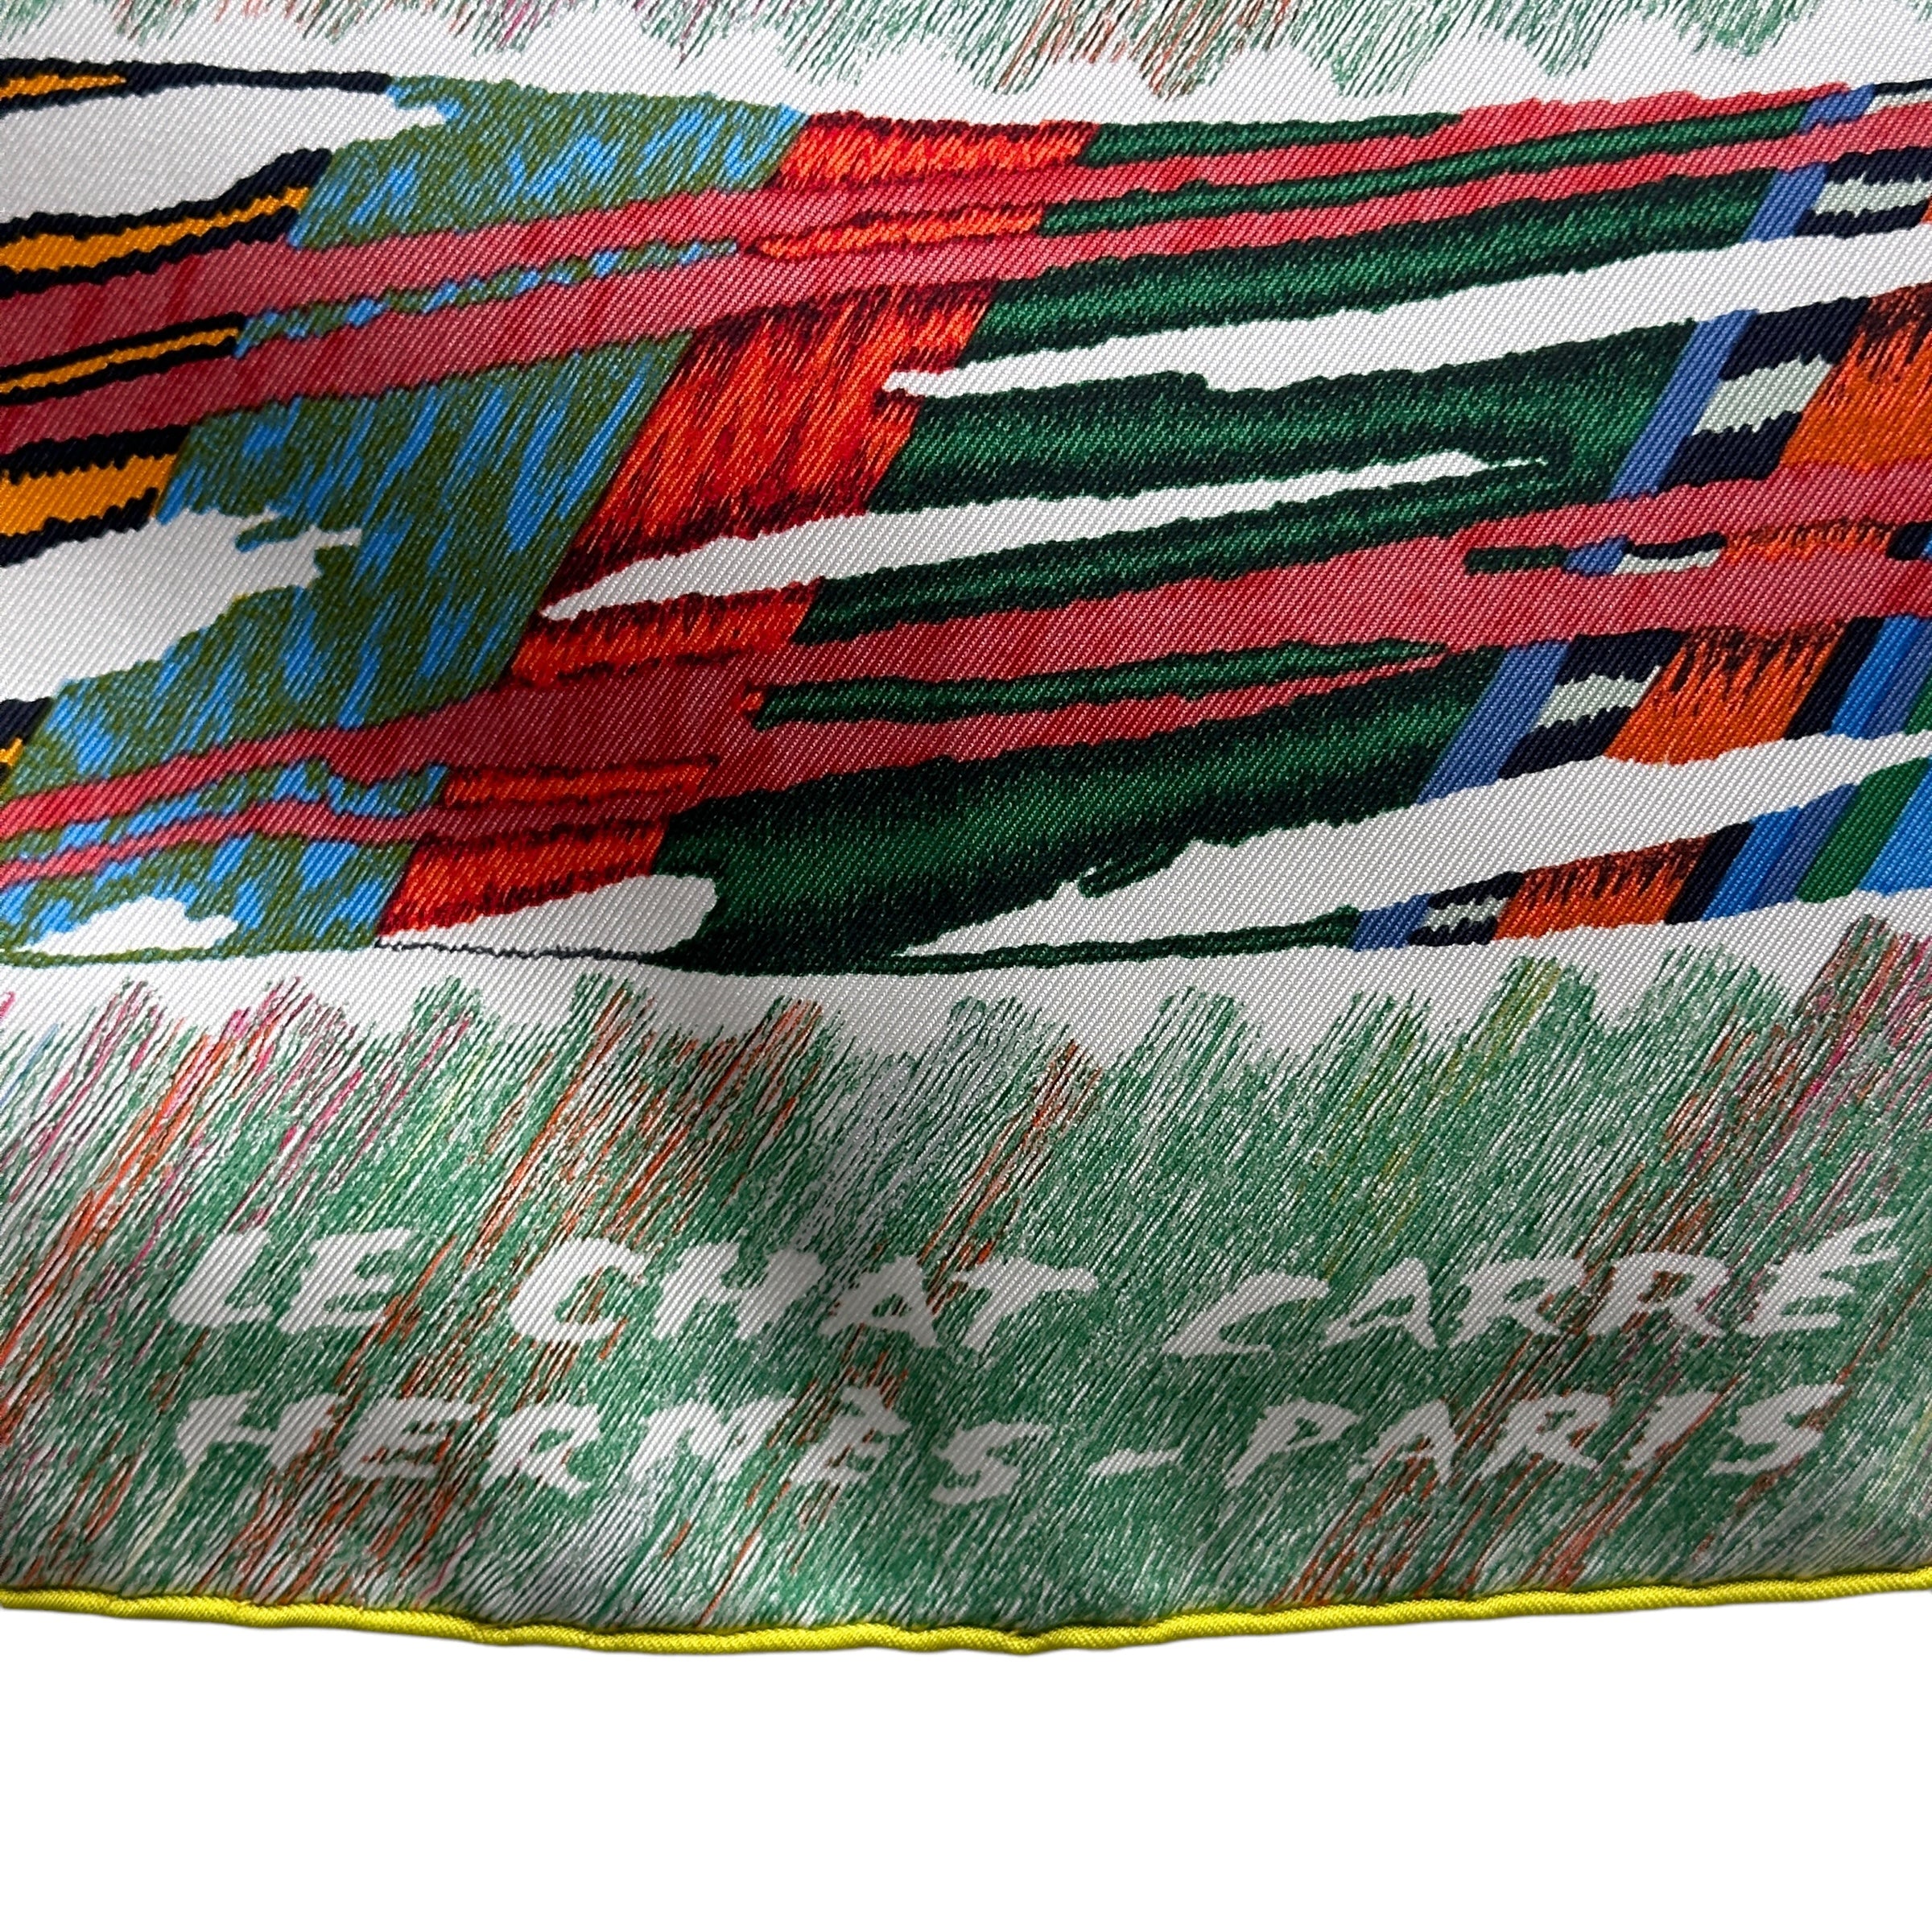 titre-Analyzing image  foulard-carre-hermes-le-chat-carre-par-florence-manlik